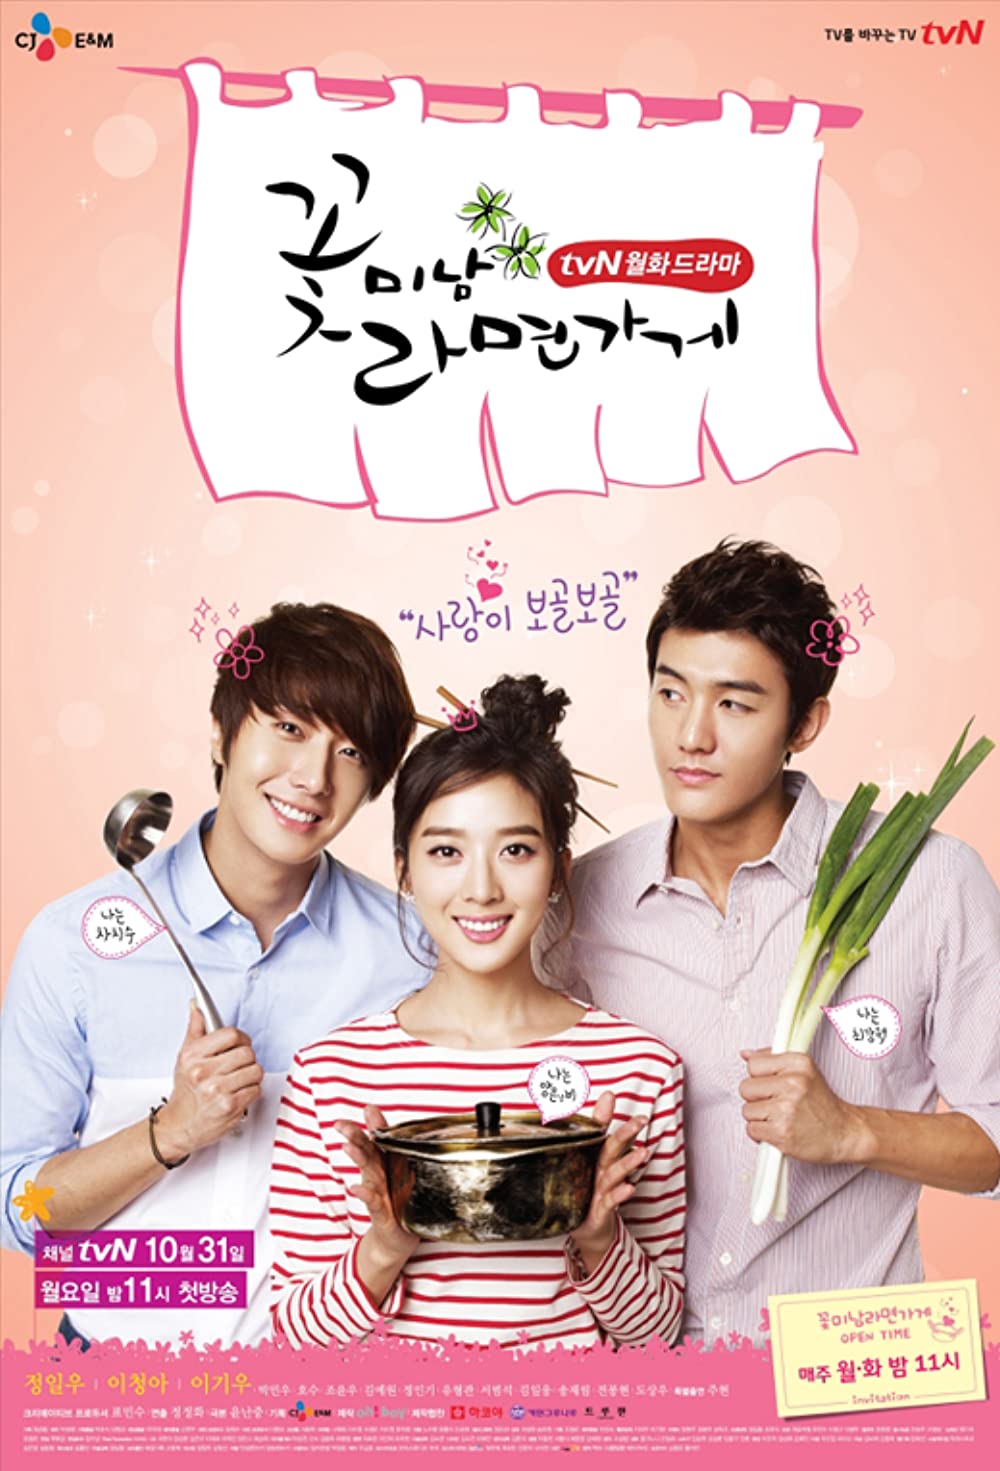 harper bazaar nhung bo phim cua jung il woo dong 4 - 12 bộ phim hay nhất của “hoàng tử cổ trang” Jung Il Woo